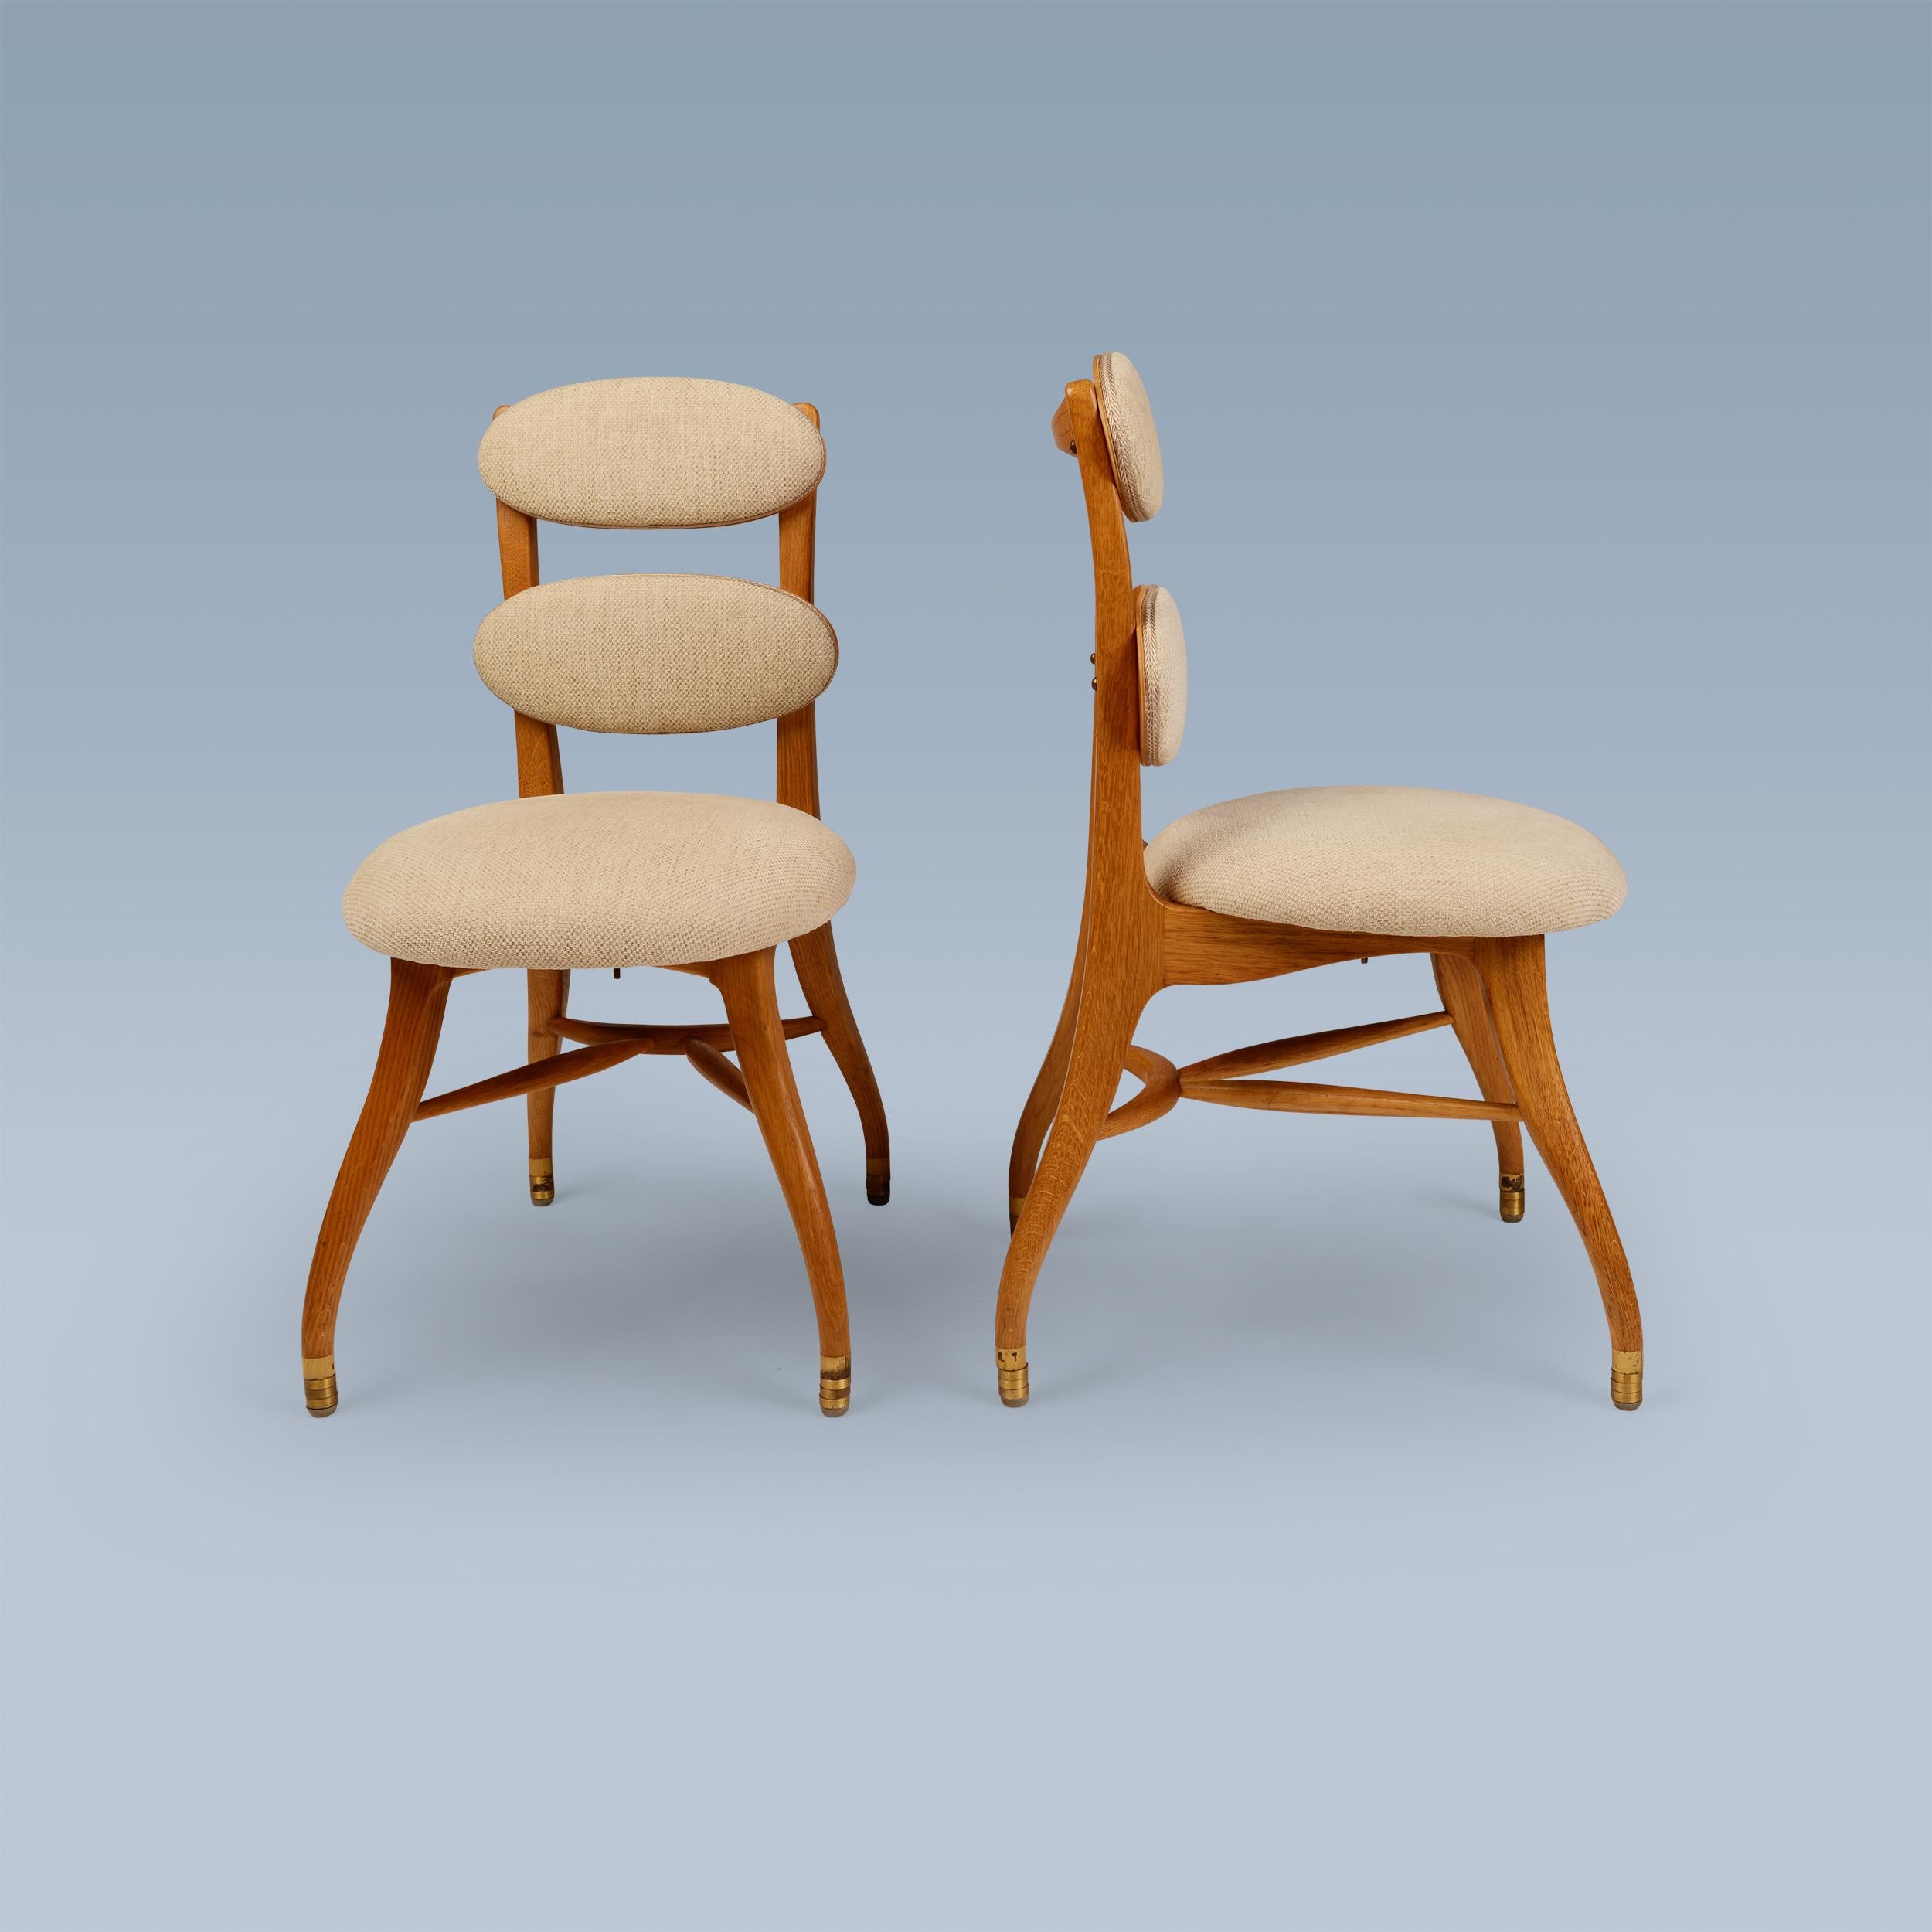 Cette paire de chaises très rares a été conçue en 1942 par Vilhelm Lauritzen pour le bâtiment emblématique Radiohuset à Copenhague. Ils sont conçus pour les musiciens / l'orchestre. Ils ont un cadre en chêne et des pieds en laiton. Leurs assises et